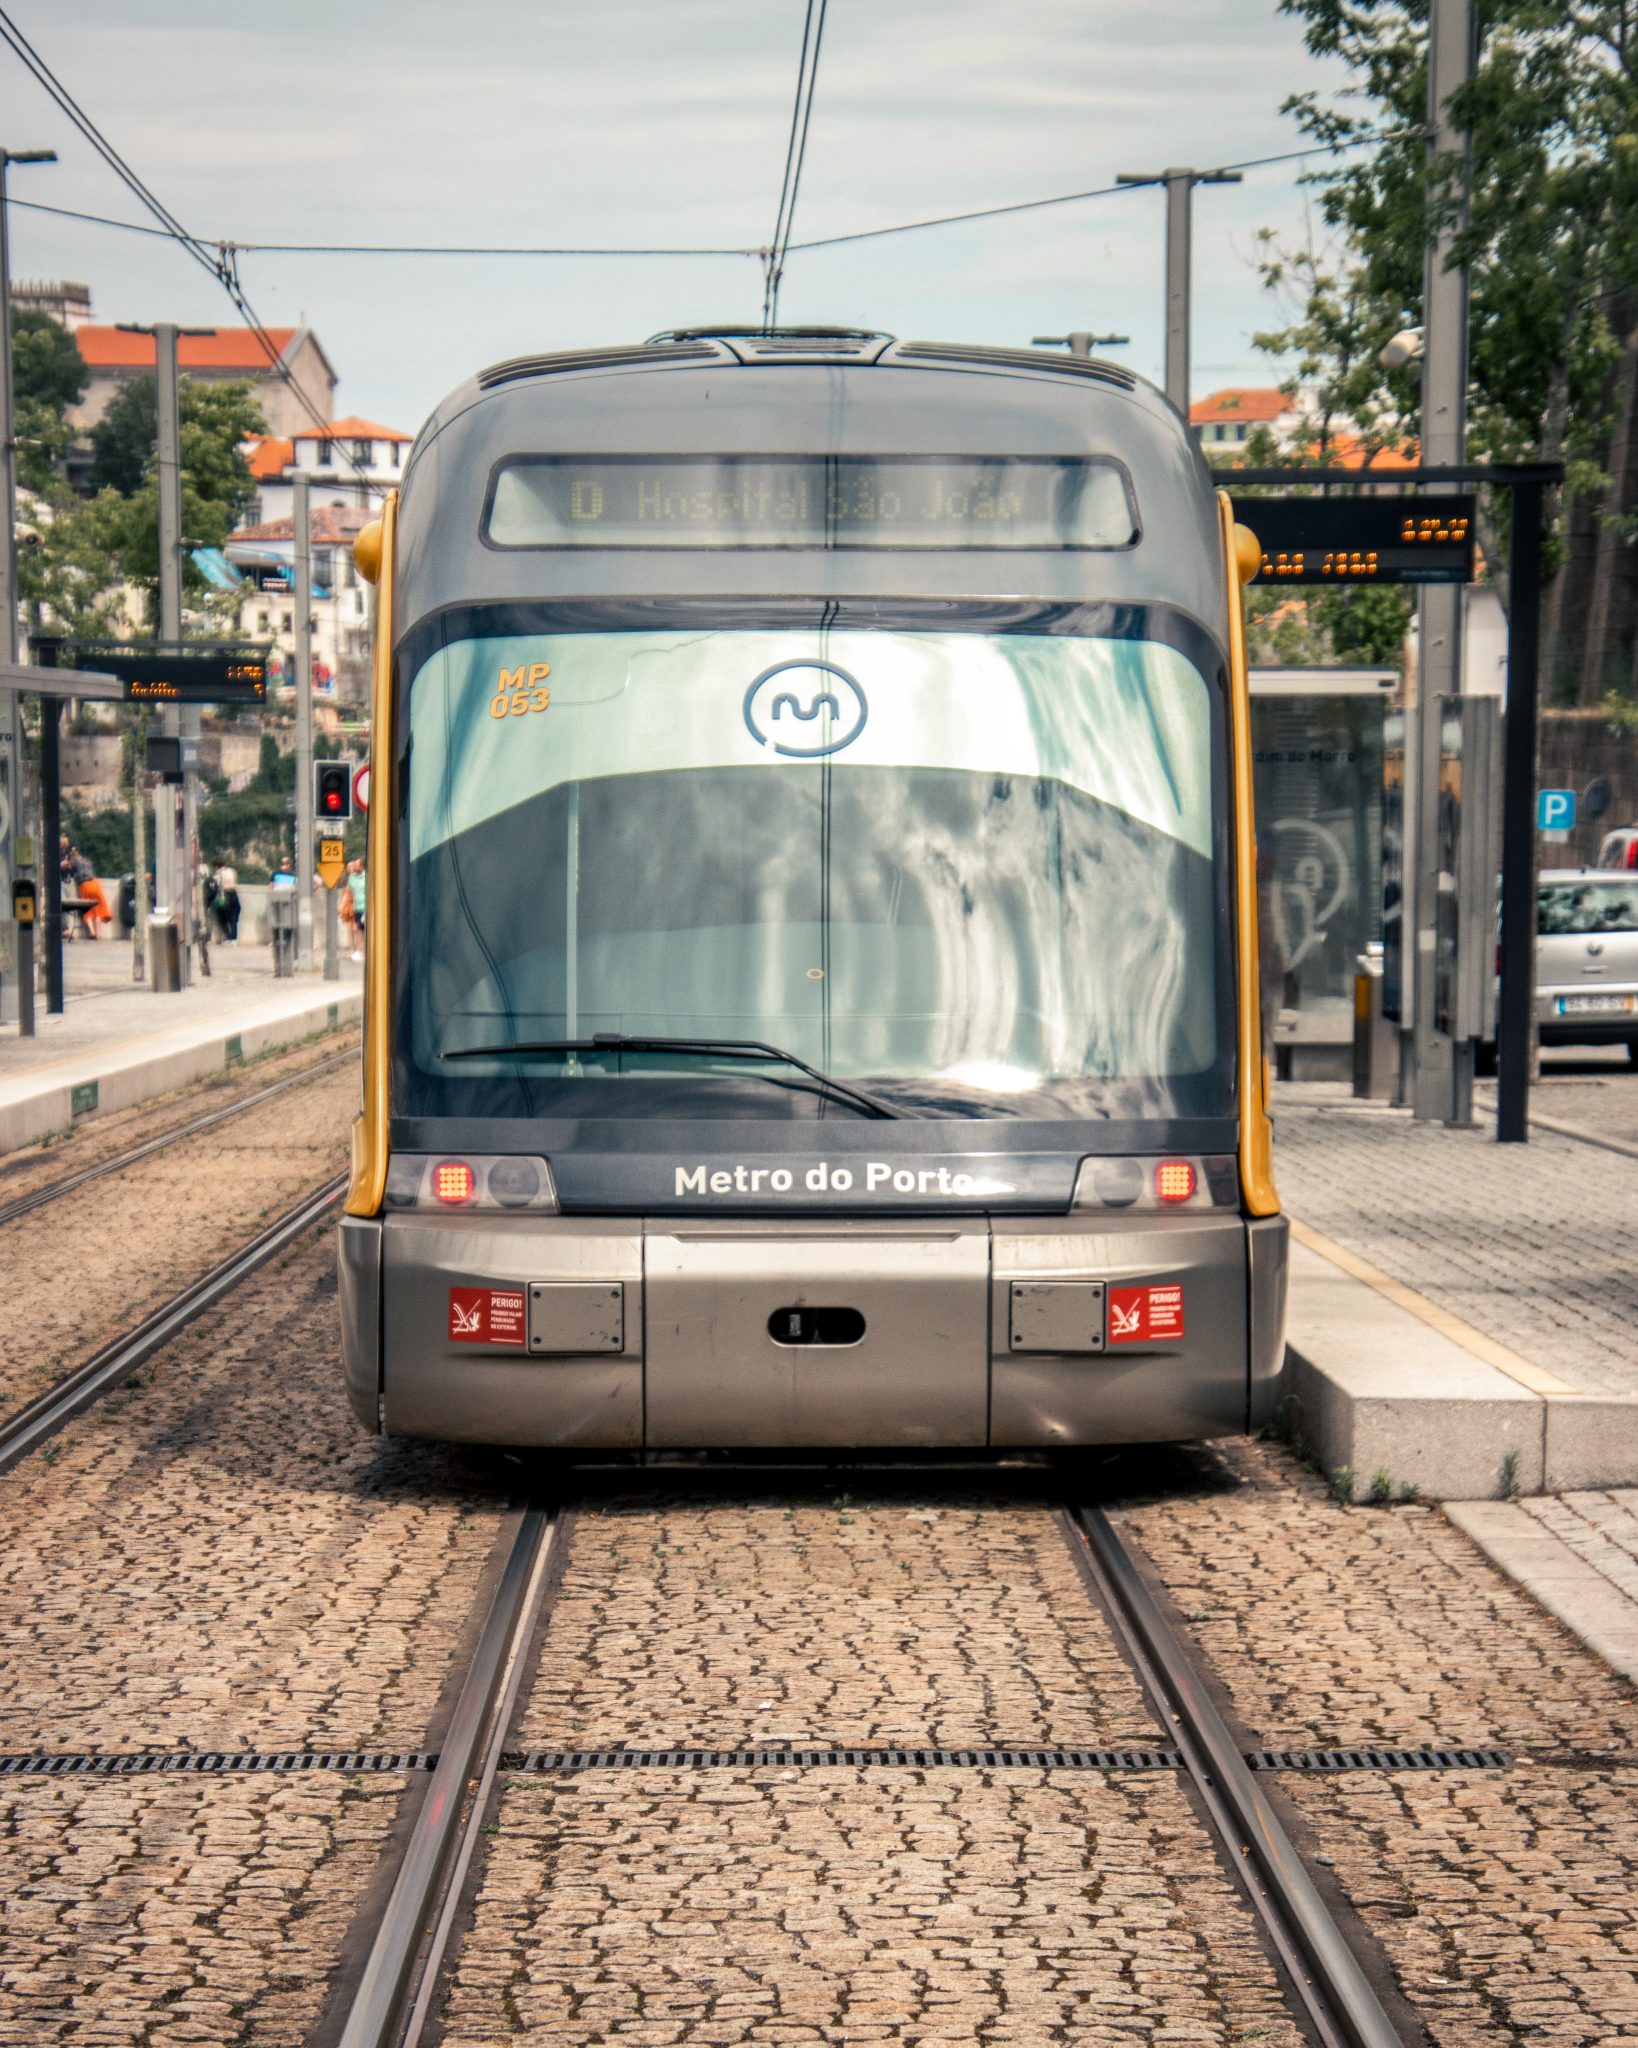 Metro do Porto at a stop in Gaia, Portugal